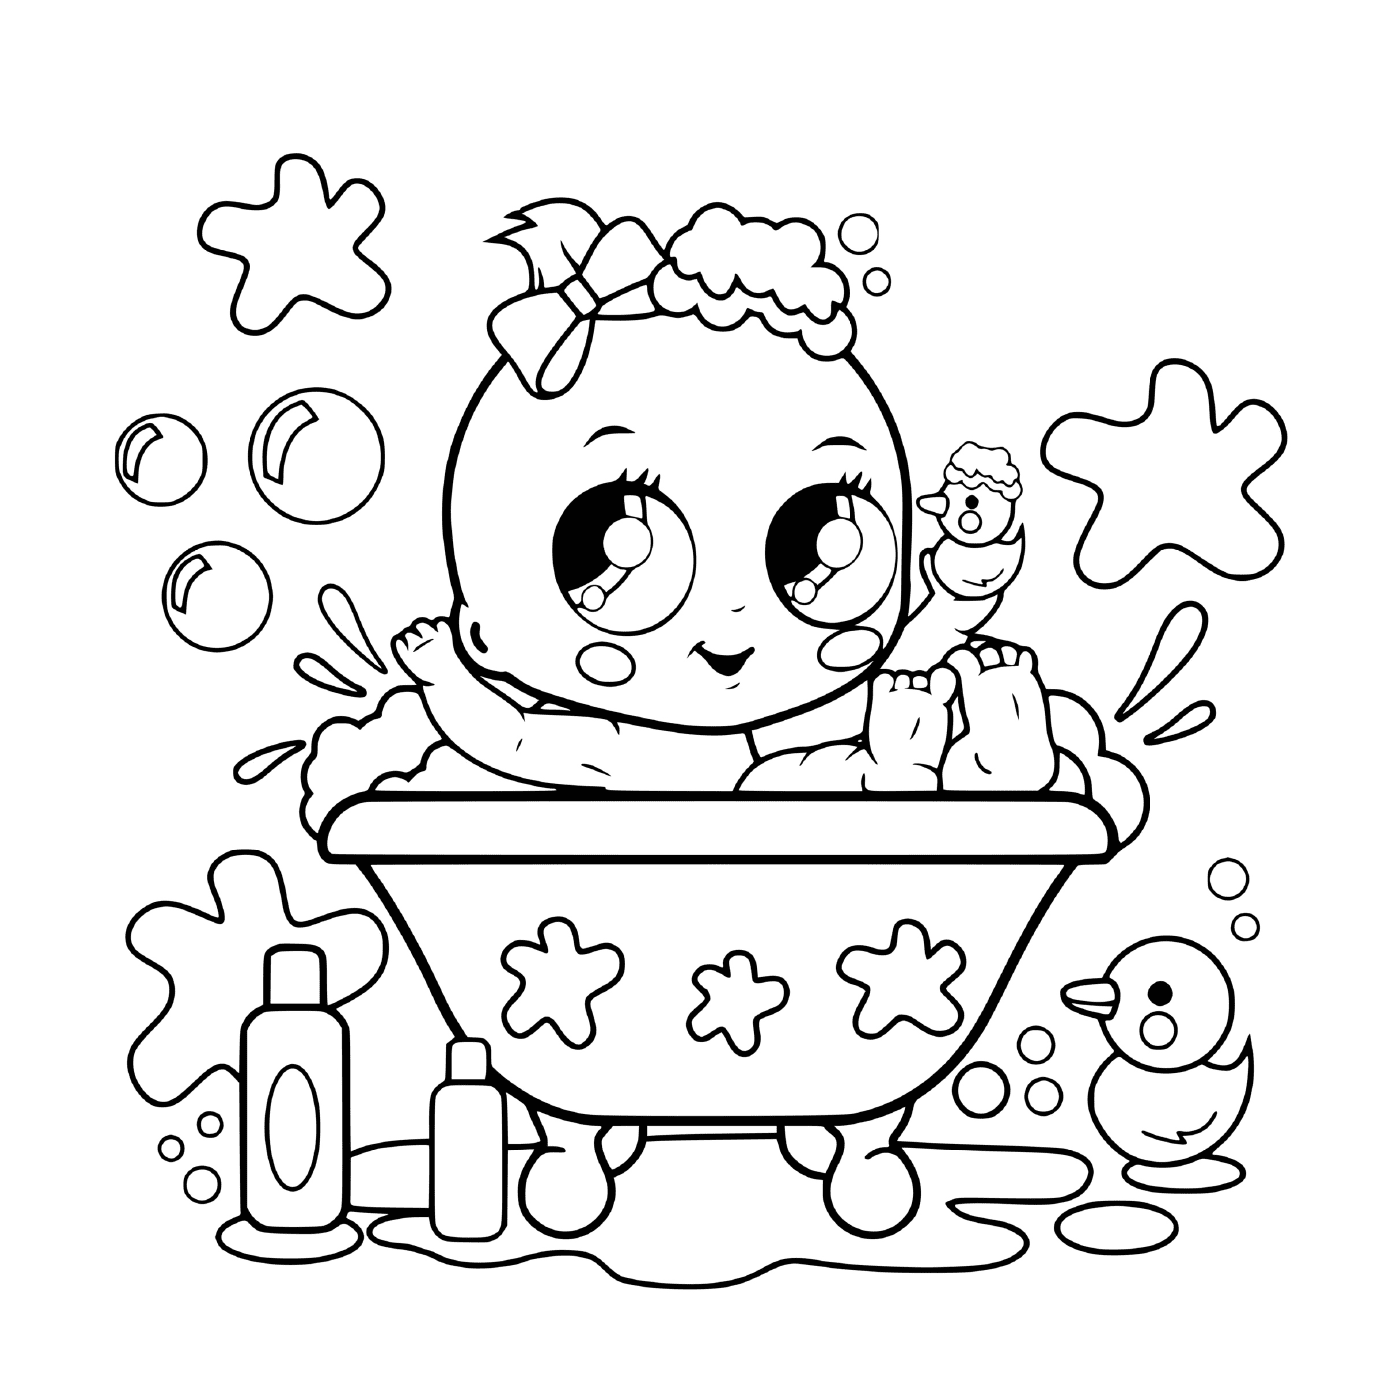  Un bebé en una bañera 